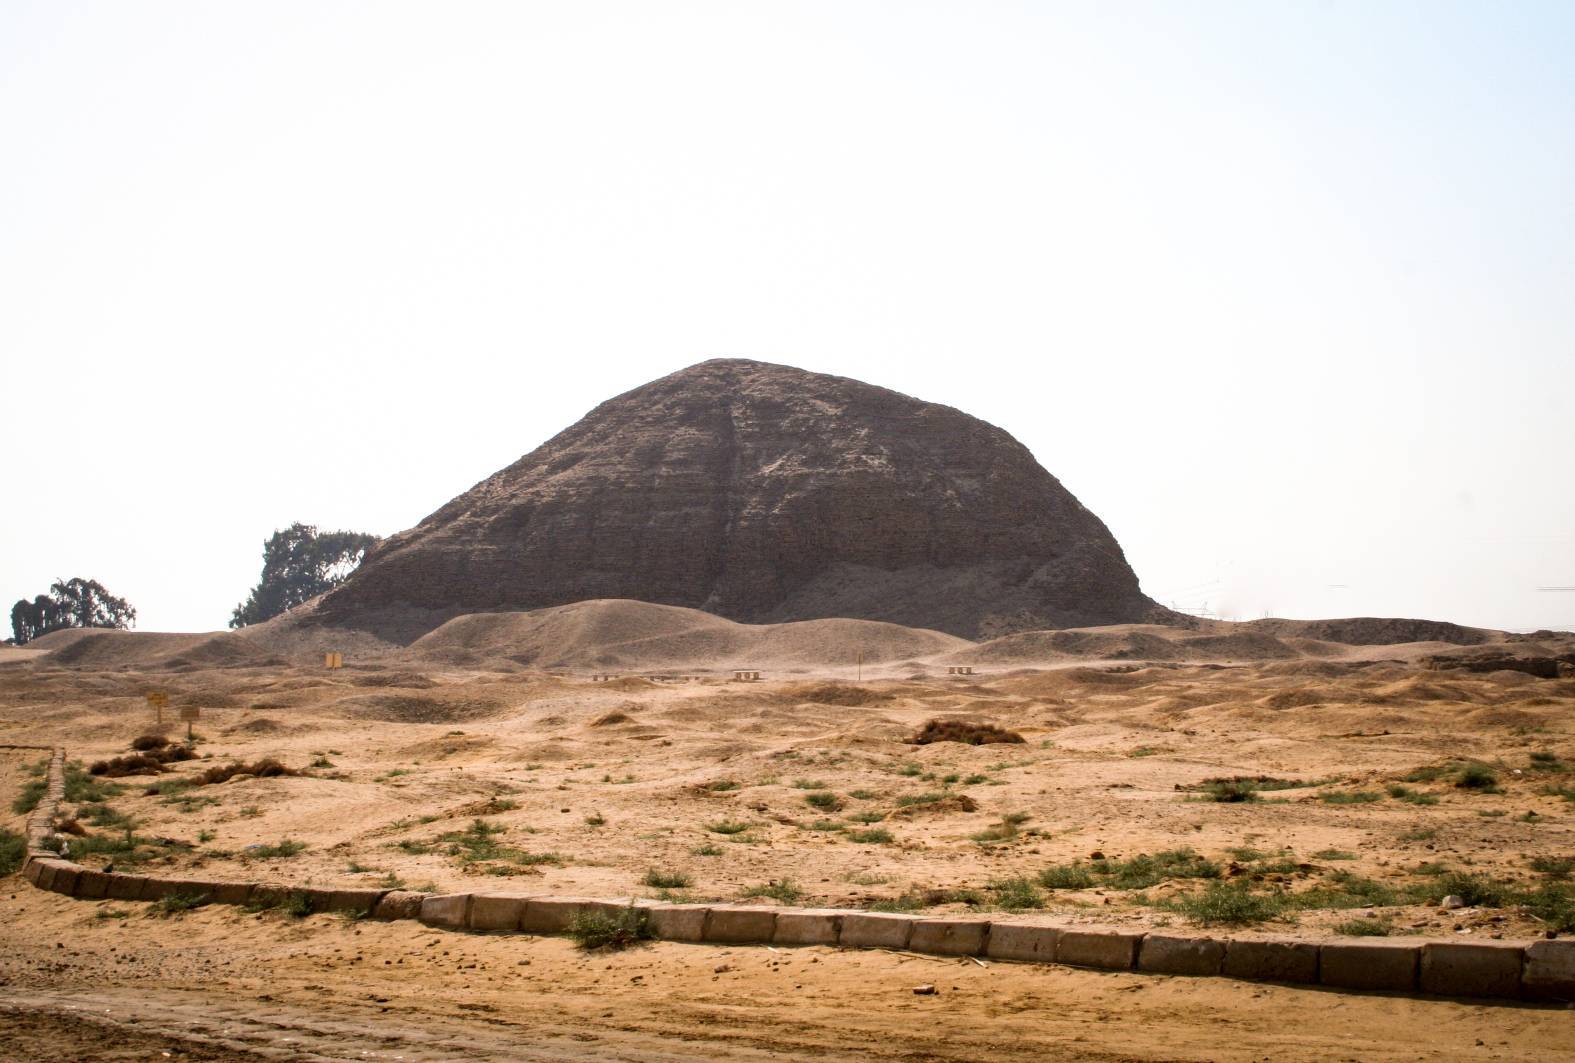 De piramide van de 12e dynastie, farao Amenemhat III in Hawara, vanuit het oosten.